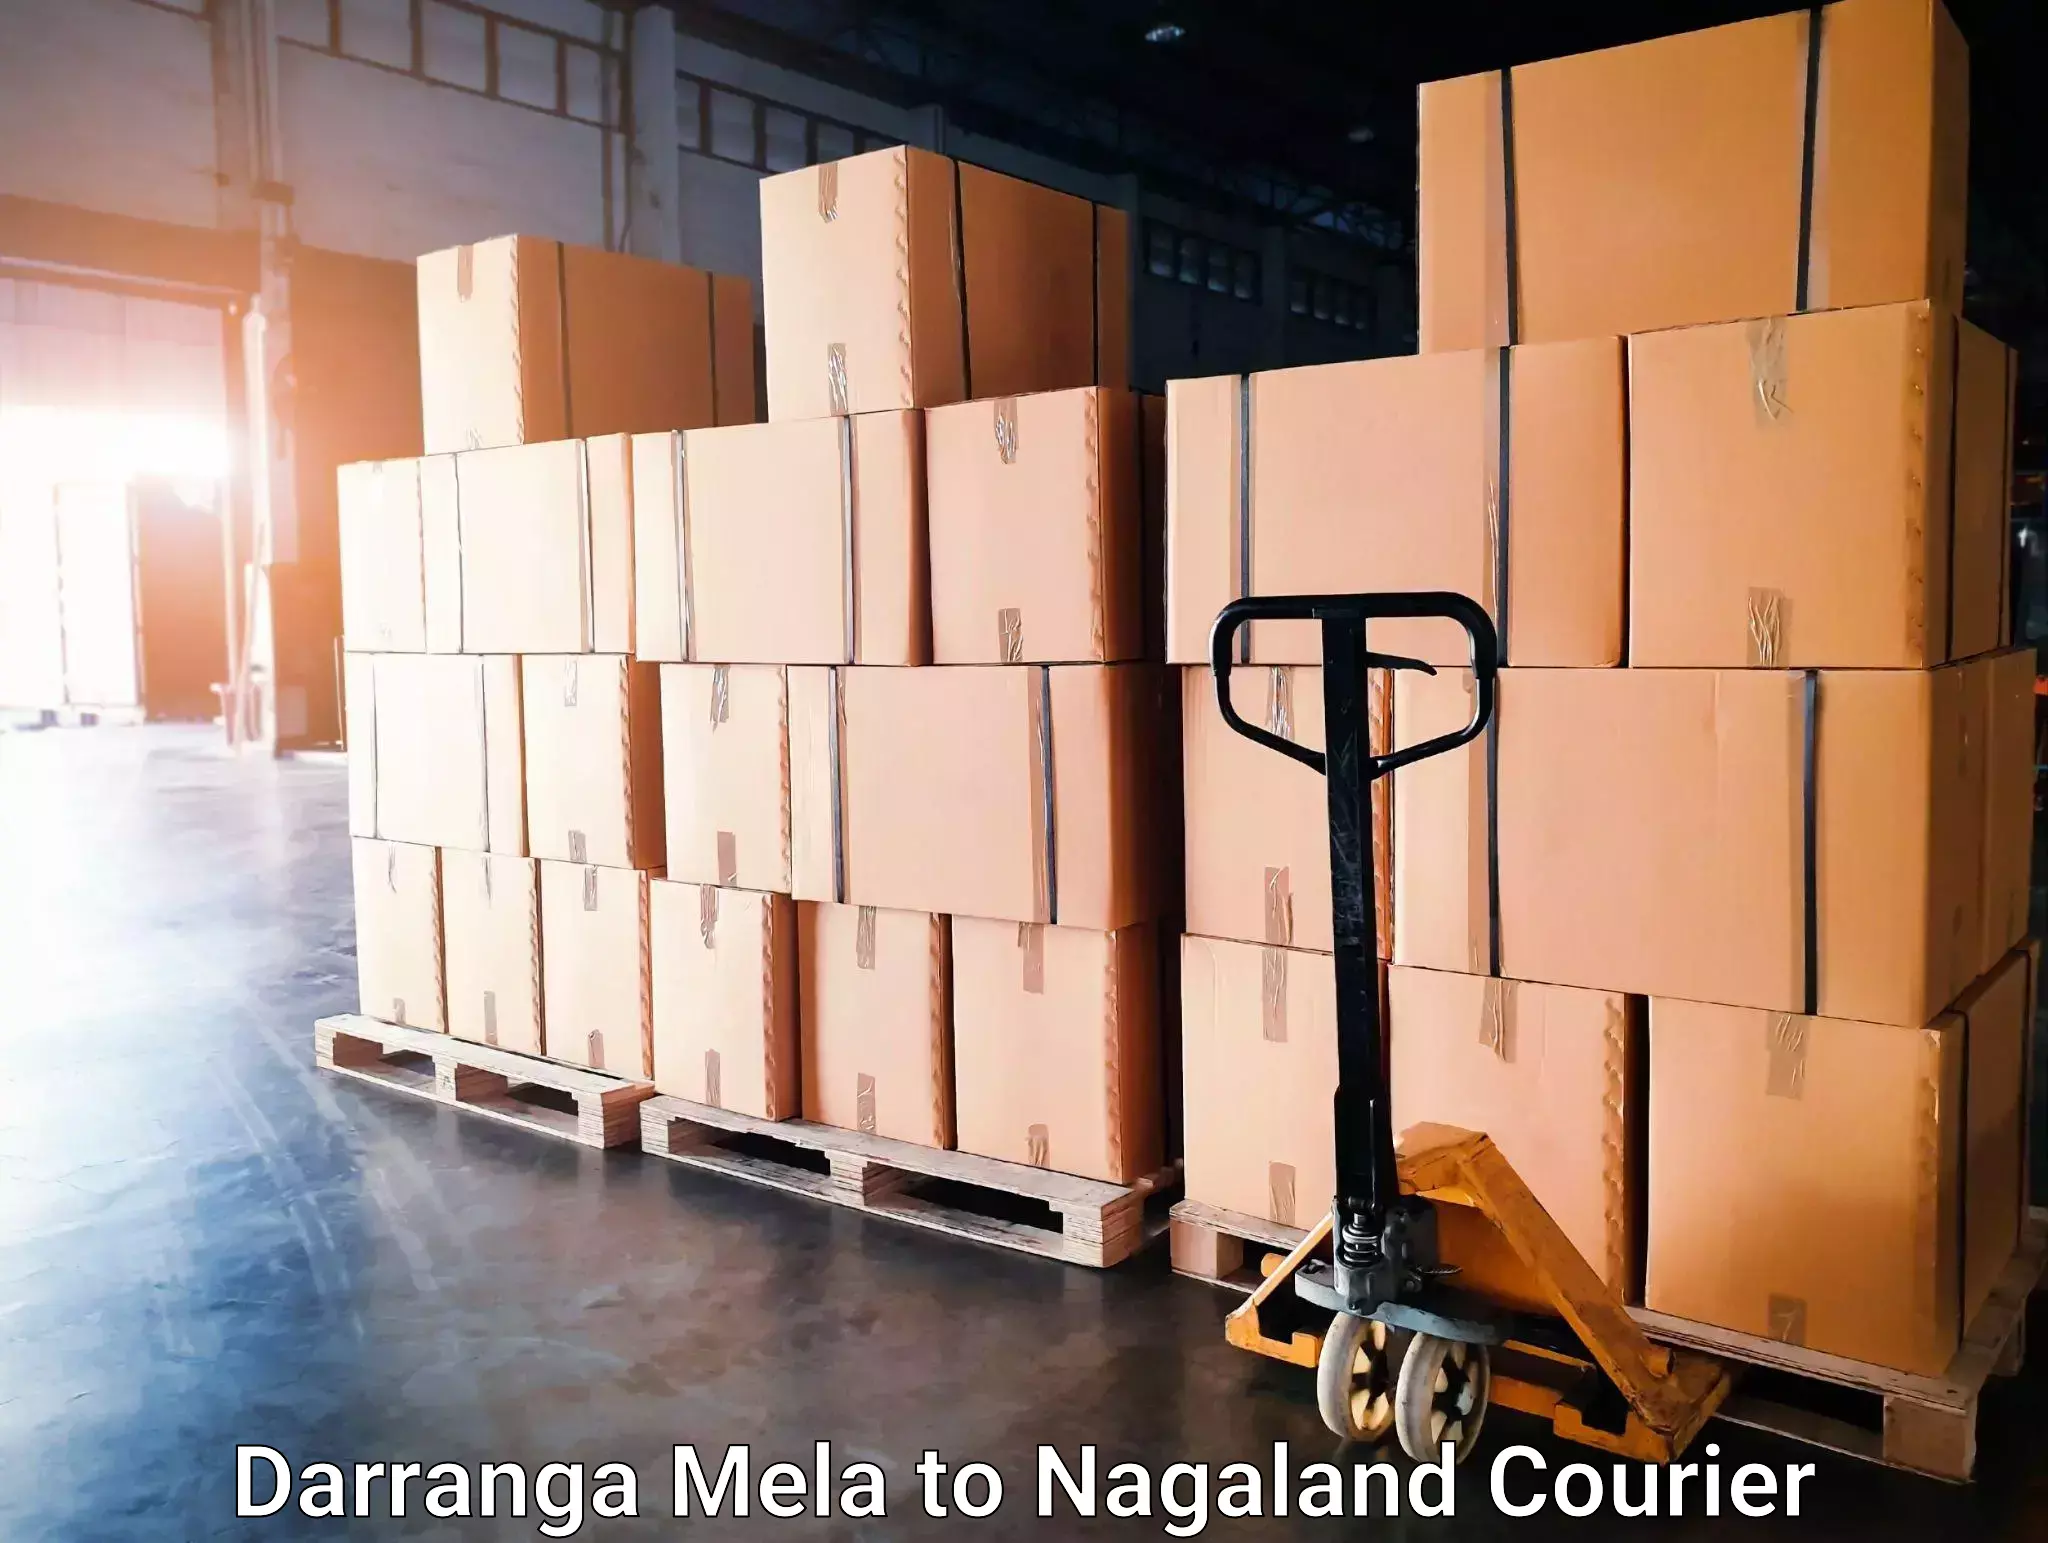 24-hour courier service Darranga Mela to Nagaland